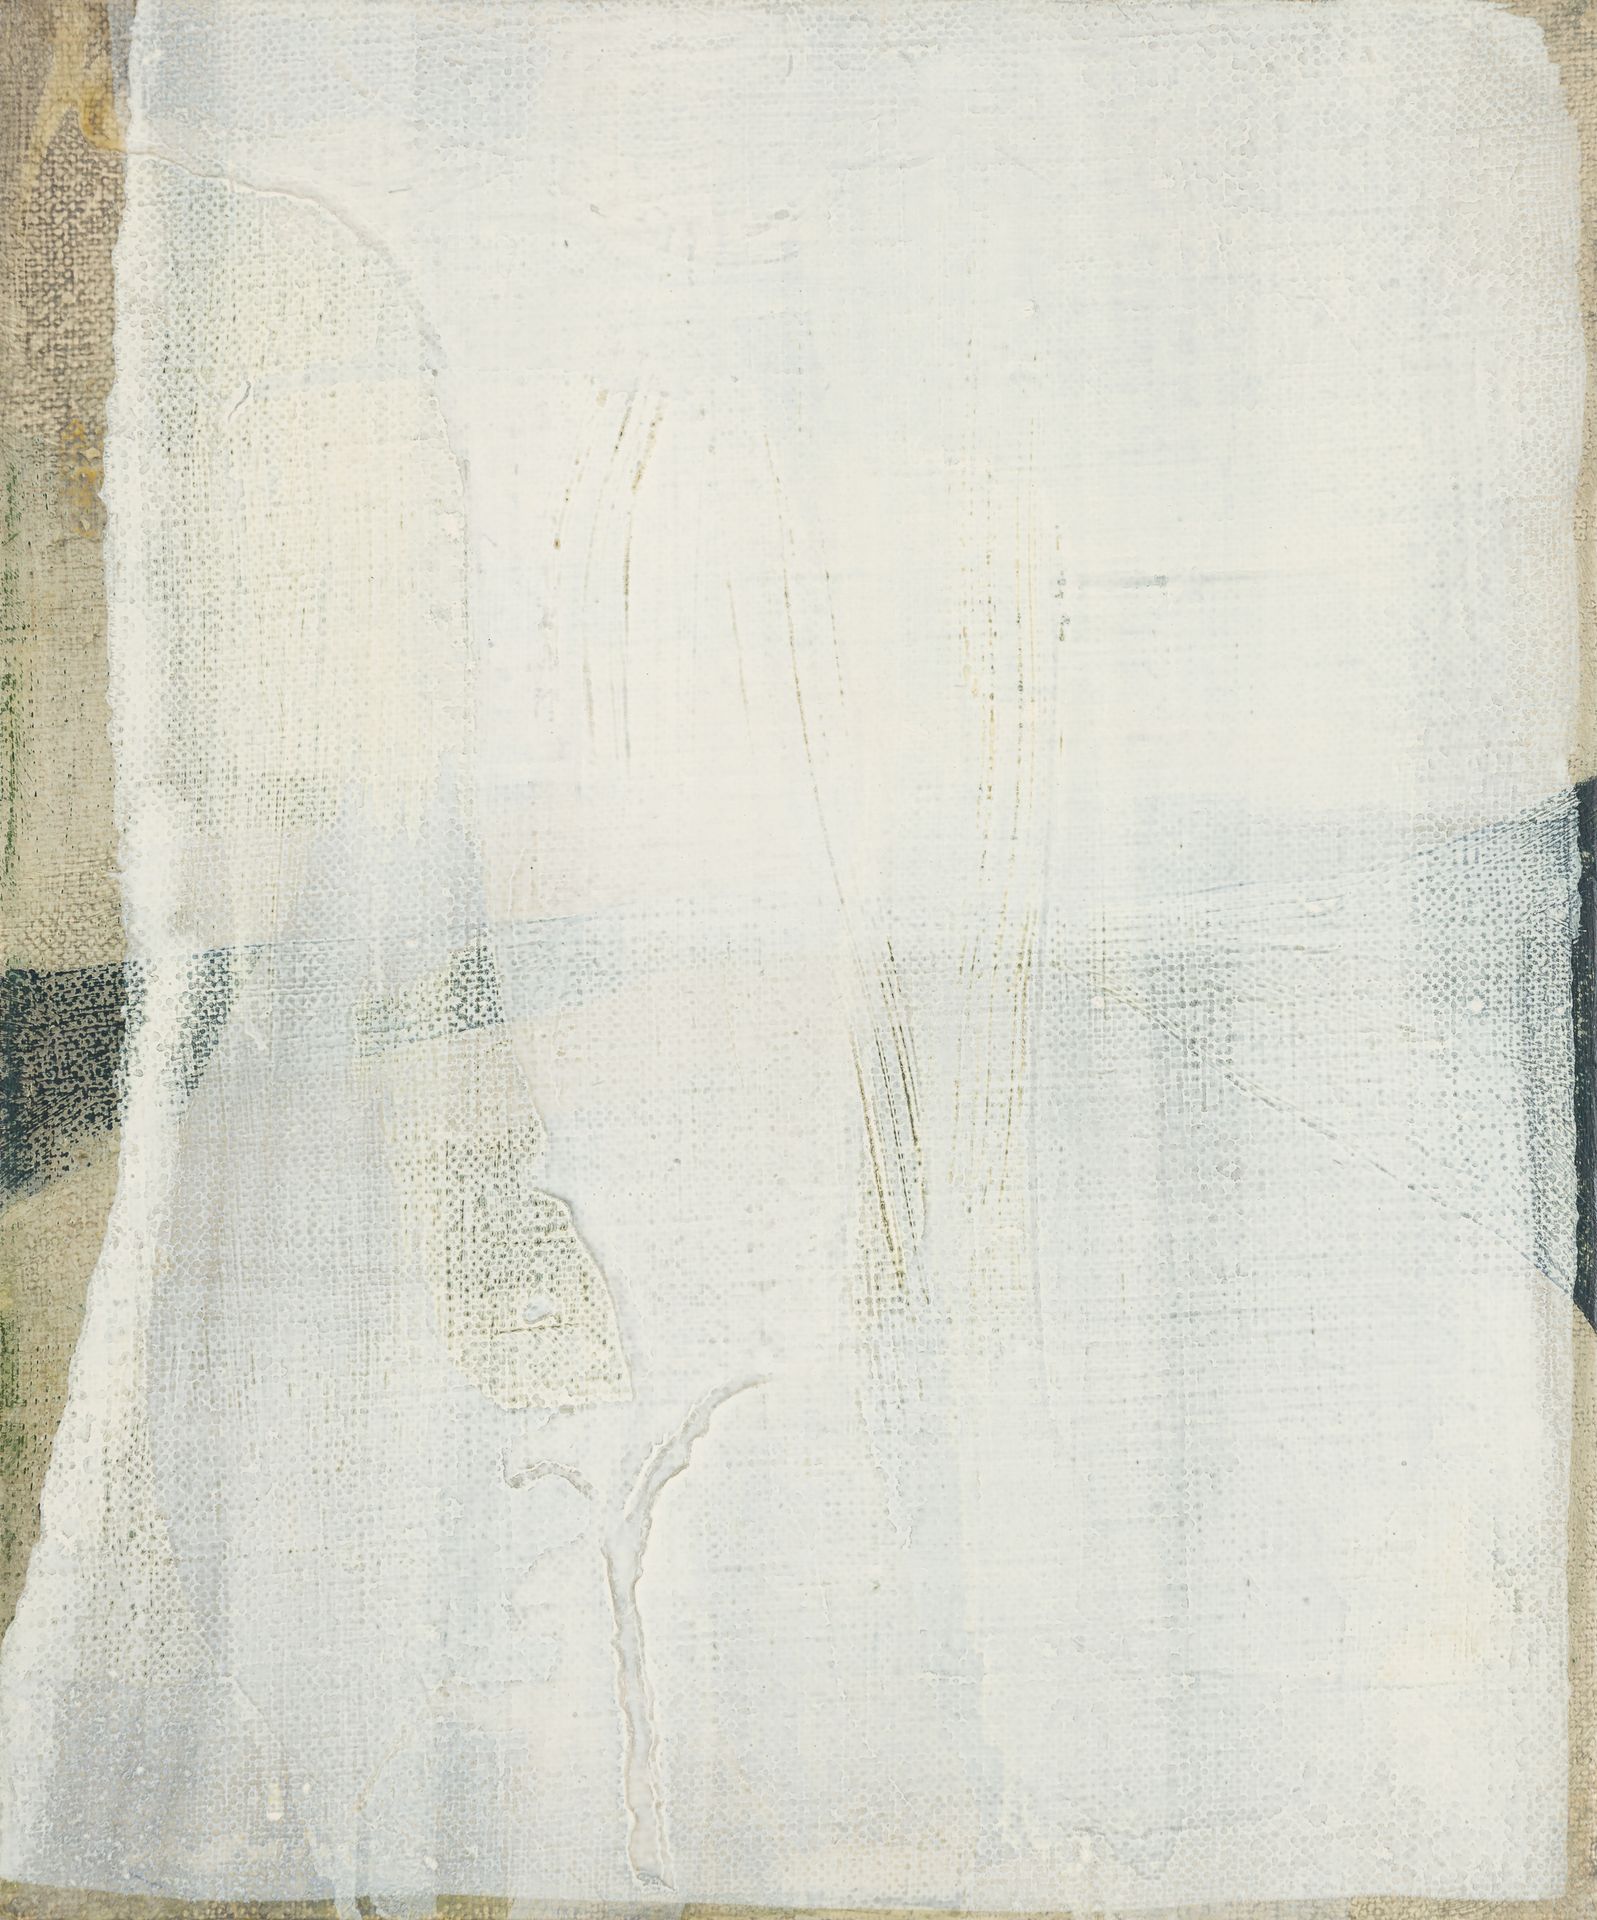 Bohatsch, Erwin Abstraktion I, 1969
Öl auf Leinwand
Verso signiert und datiert
3&hellip;